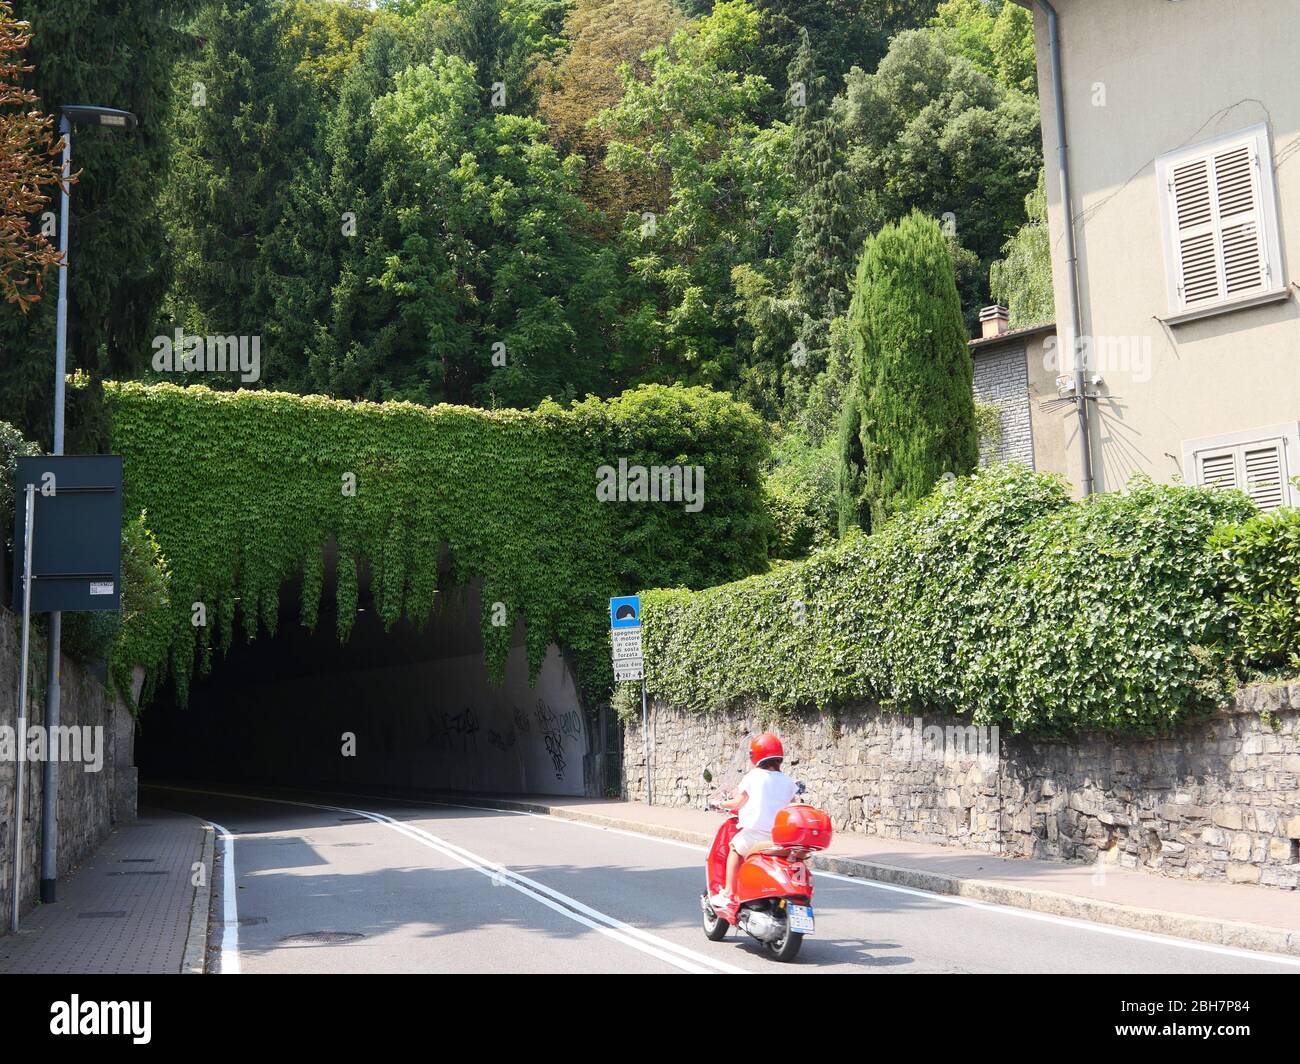 Bergame, Italie - 06 août 2019: Une fille conduisant un scooter Vespa rouge dans le beau tunnel vert couvert sombre Banque D'Images